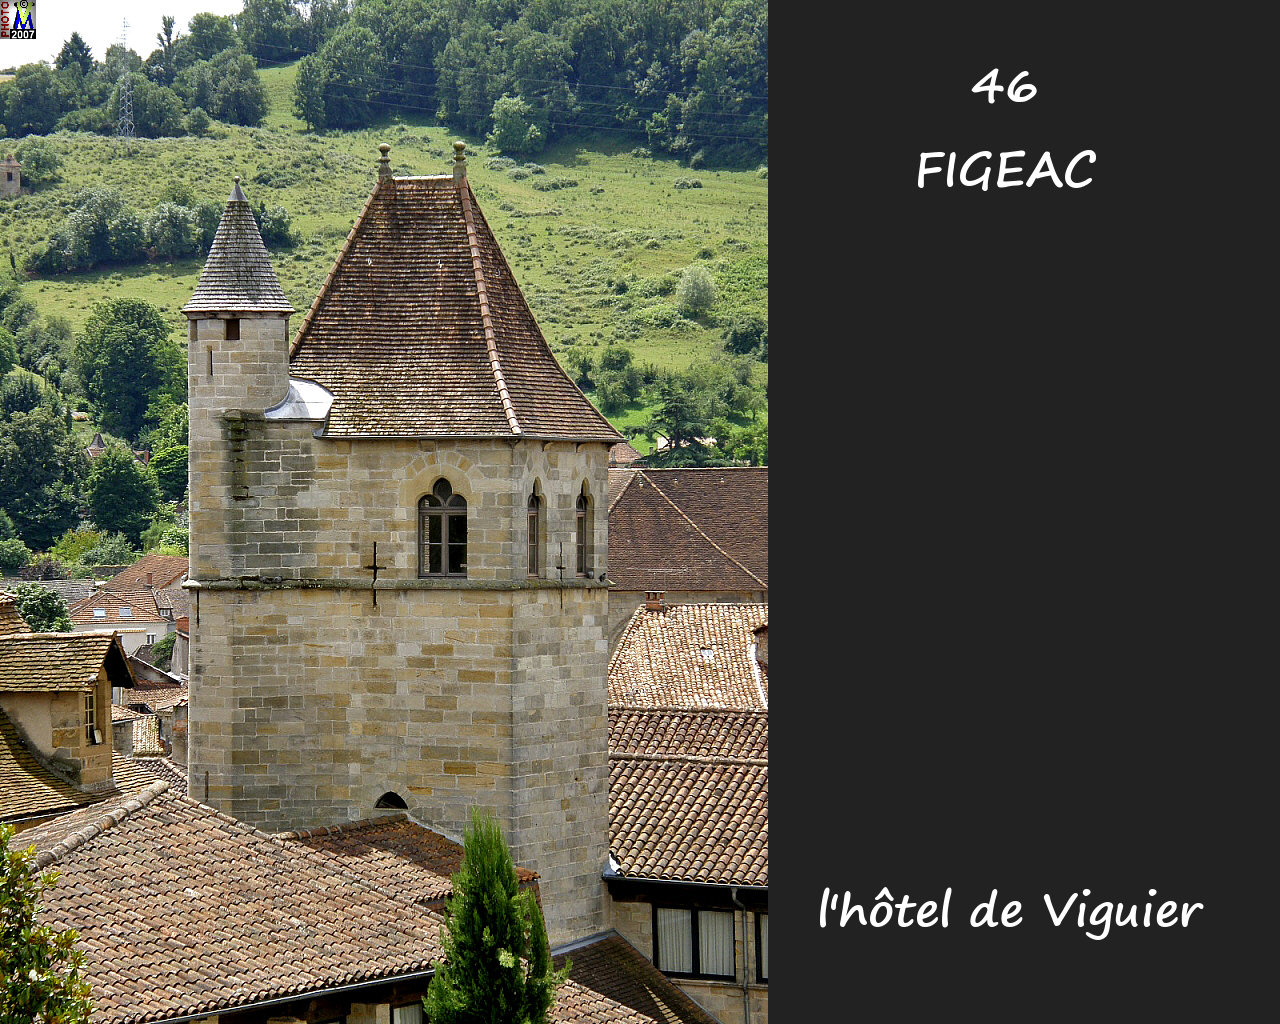 46FIGEAC_H-Viguier_100.jpg